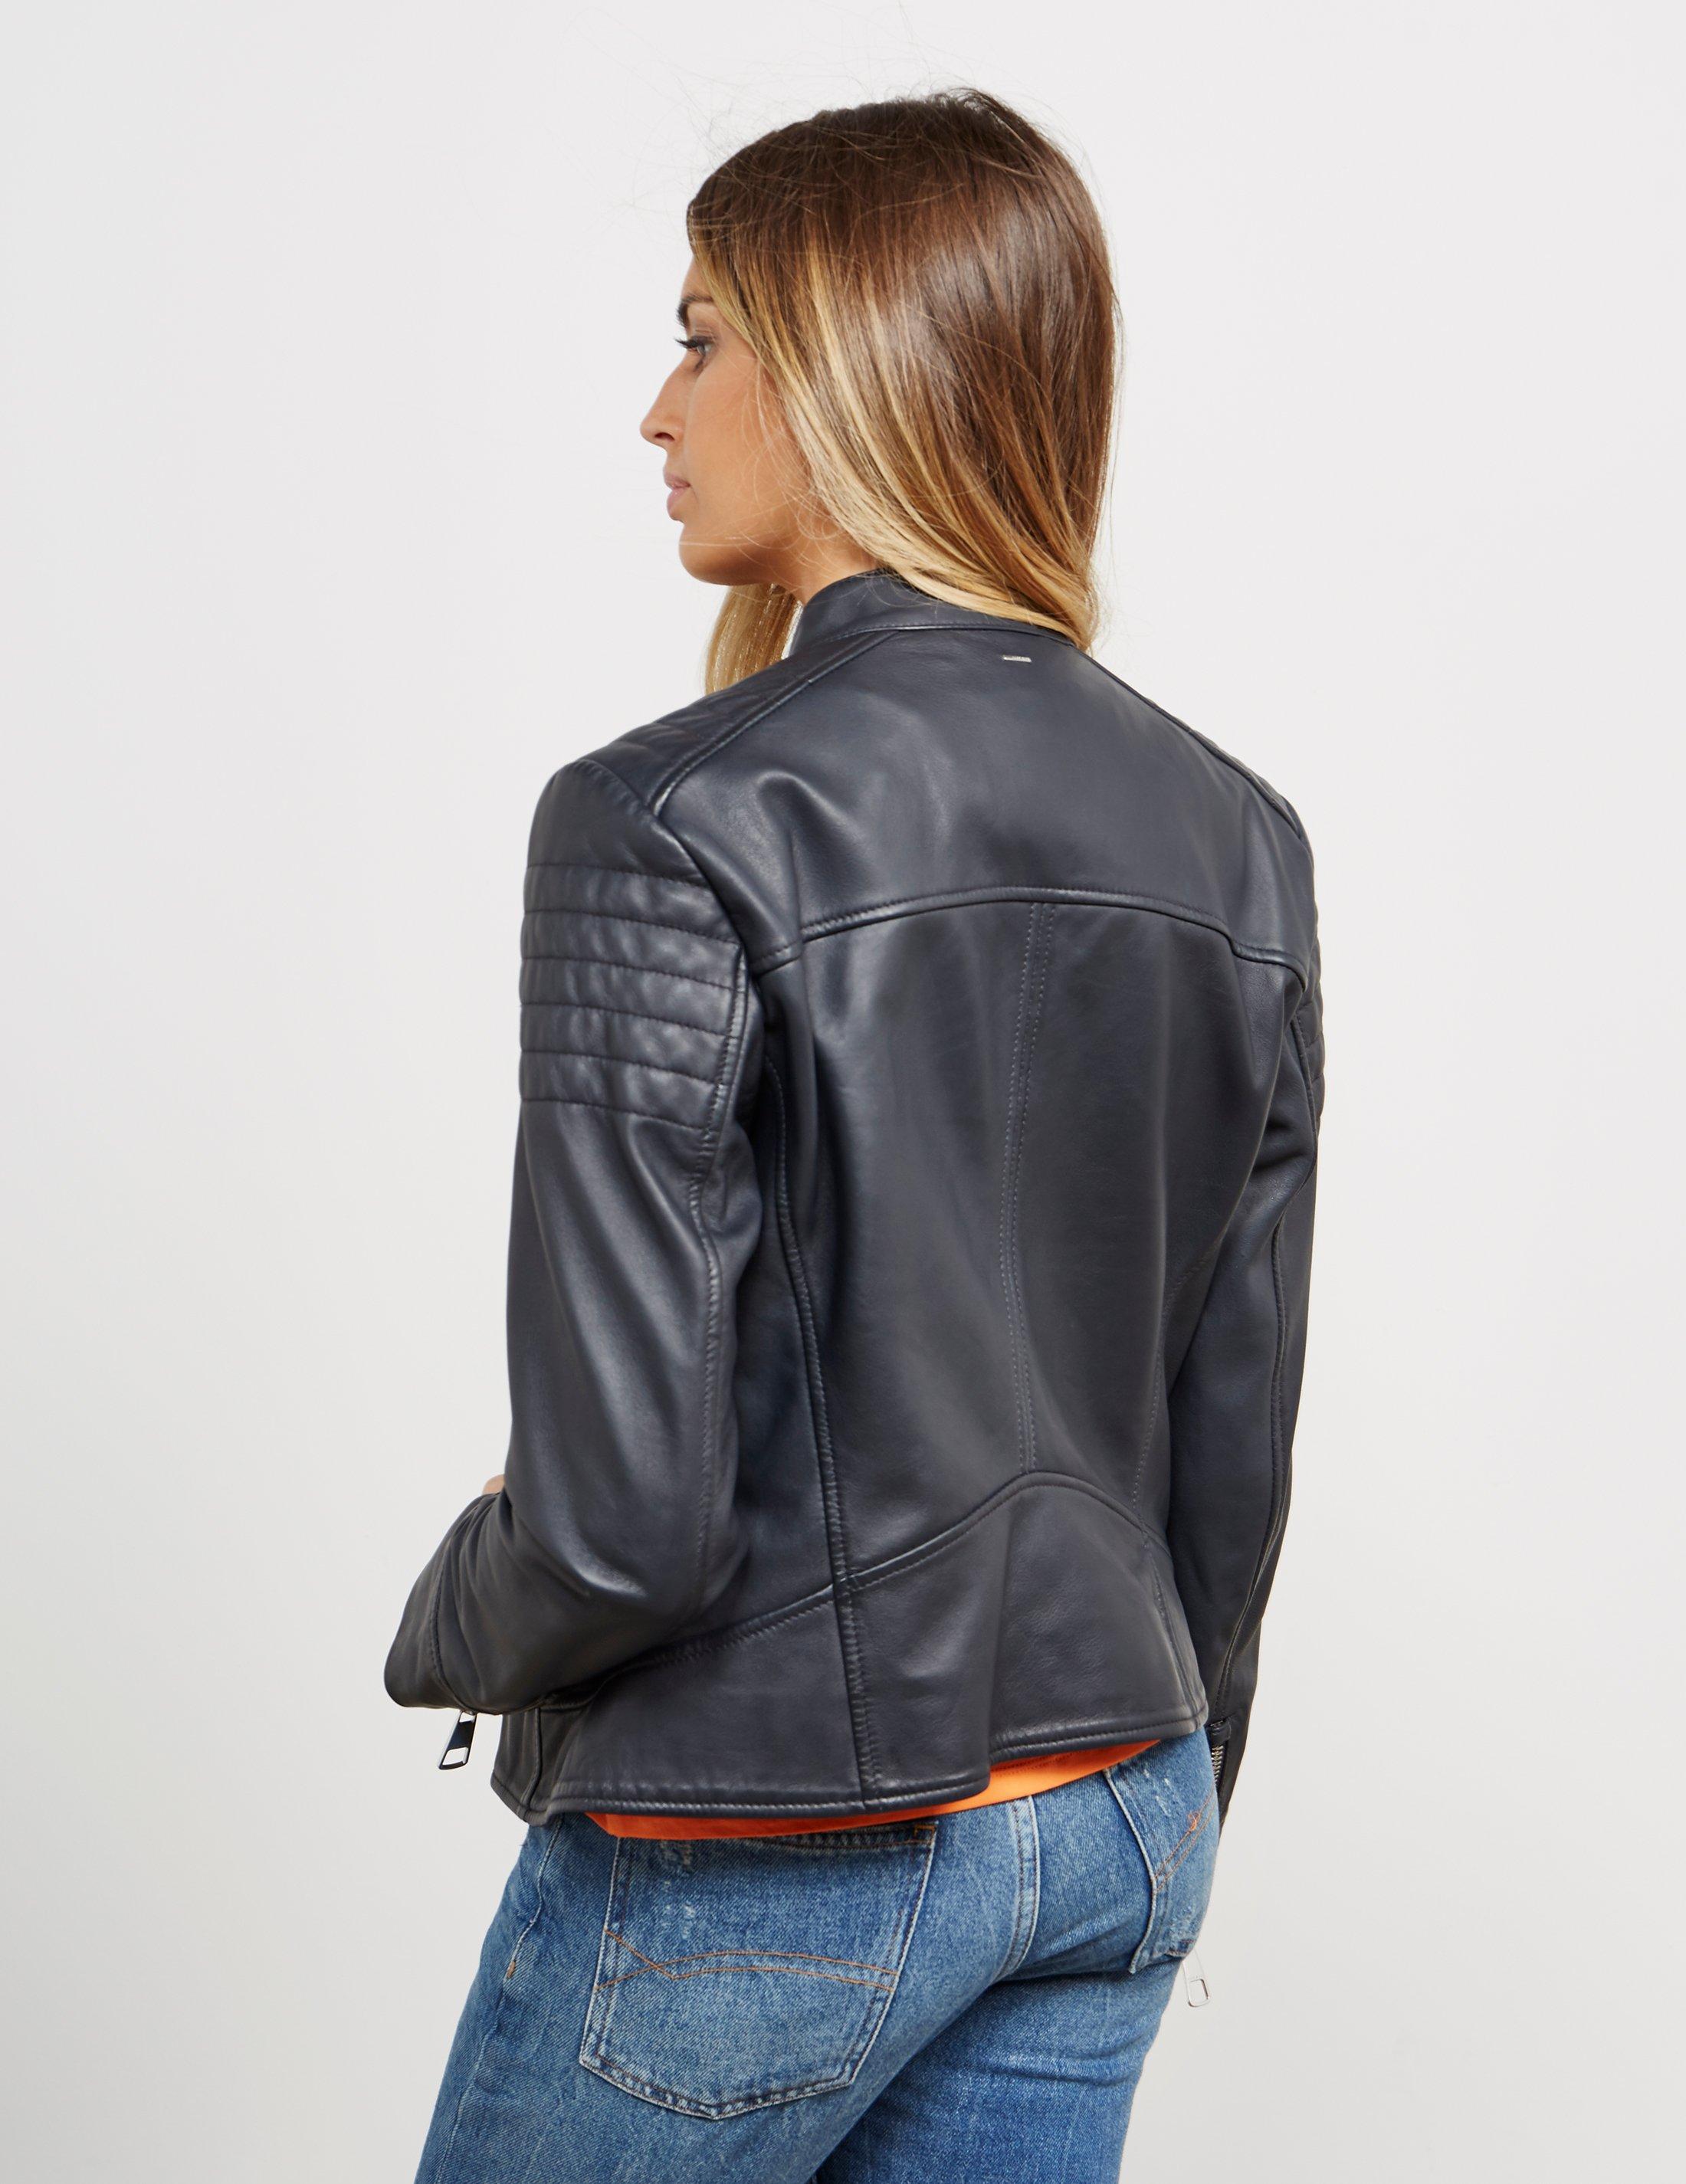 hugo boss leather jacket ladies